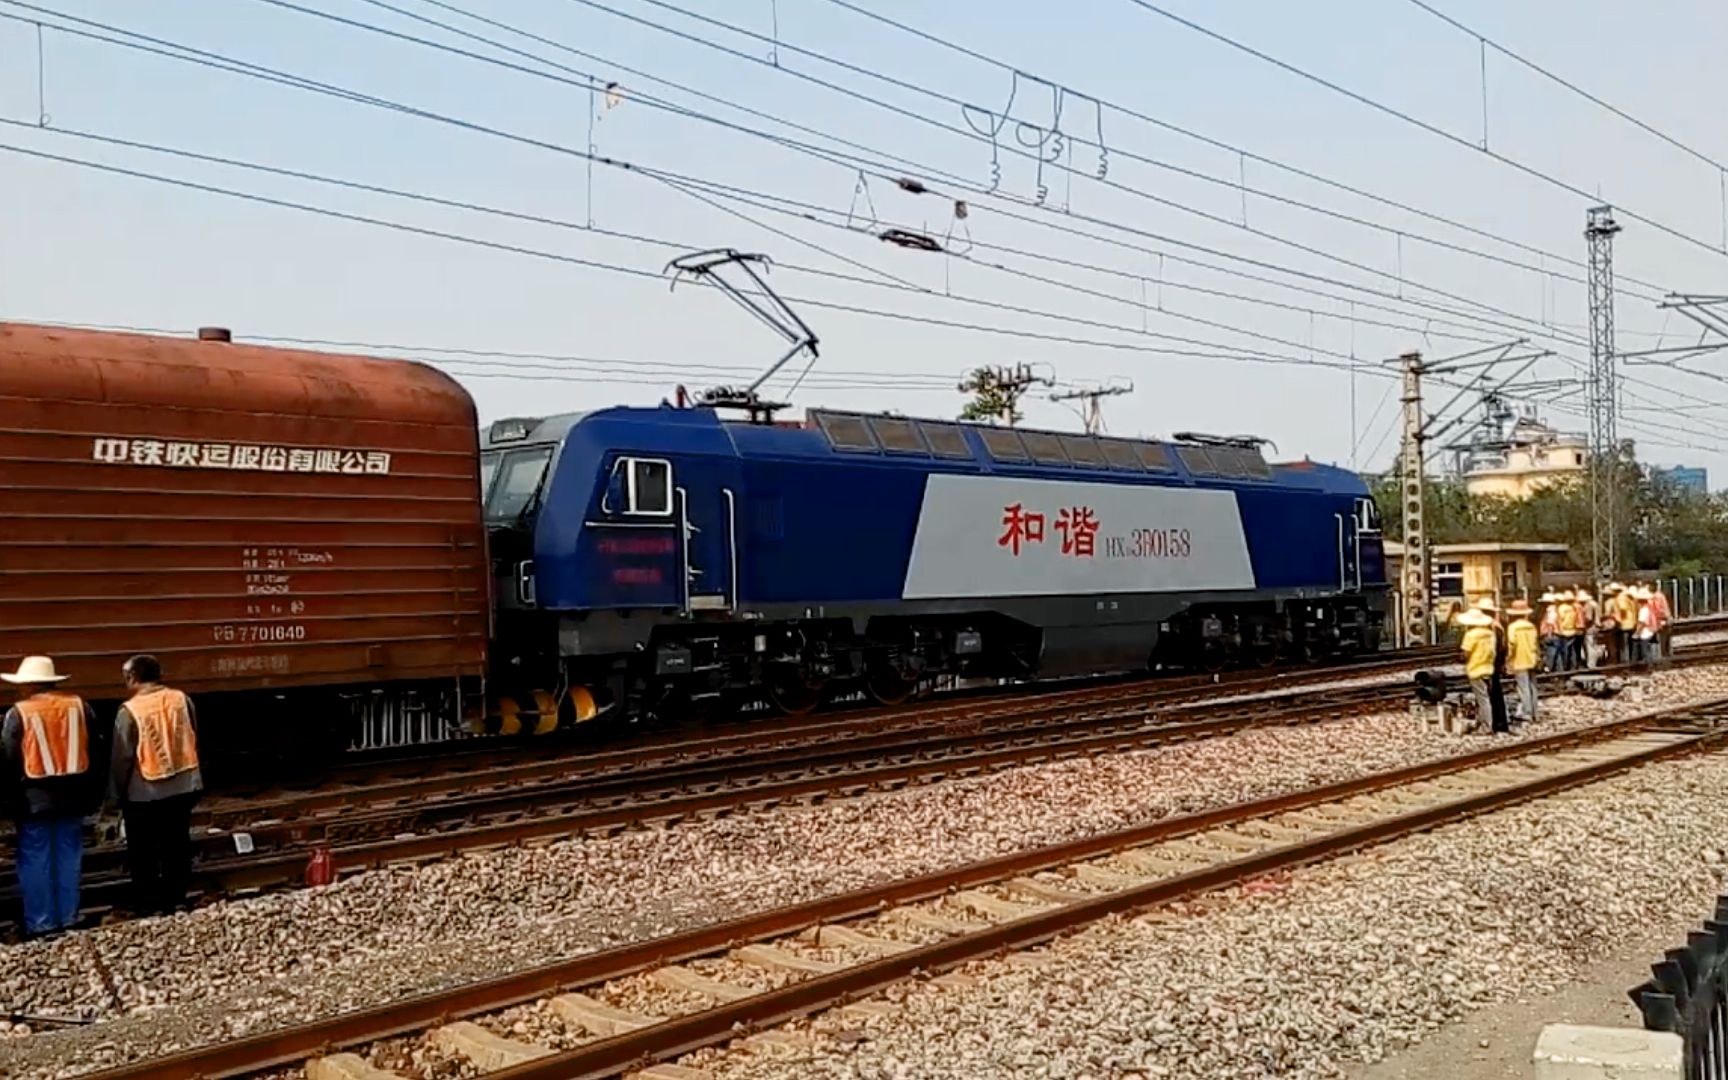 石德铁路hxd3b0158牵引行包快运上行通过晋州站二道